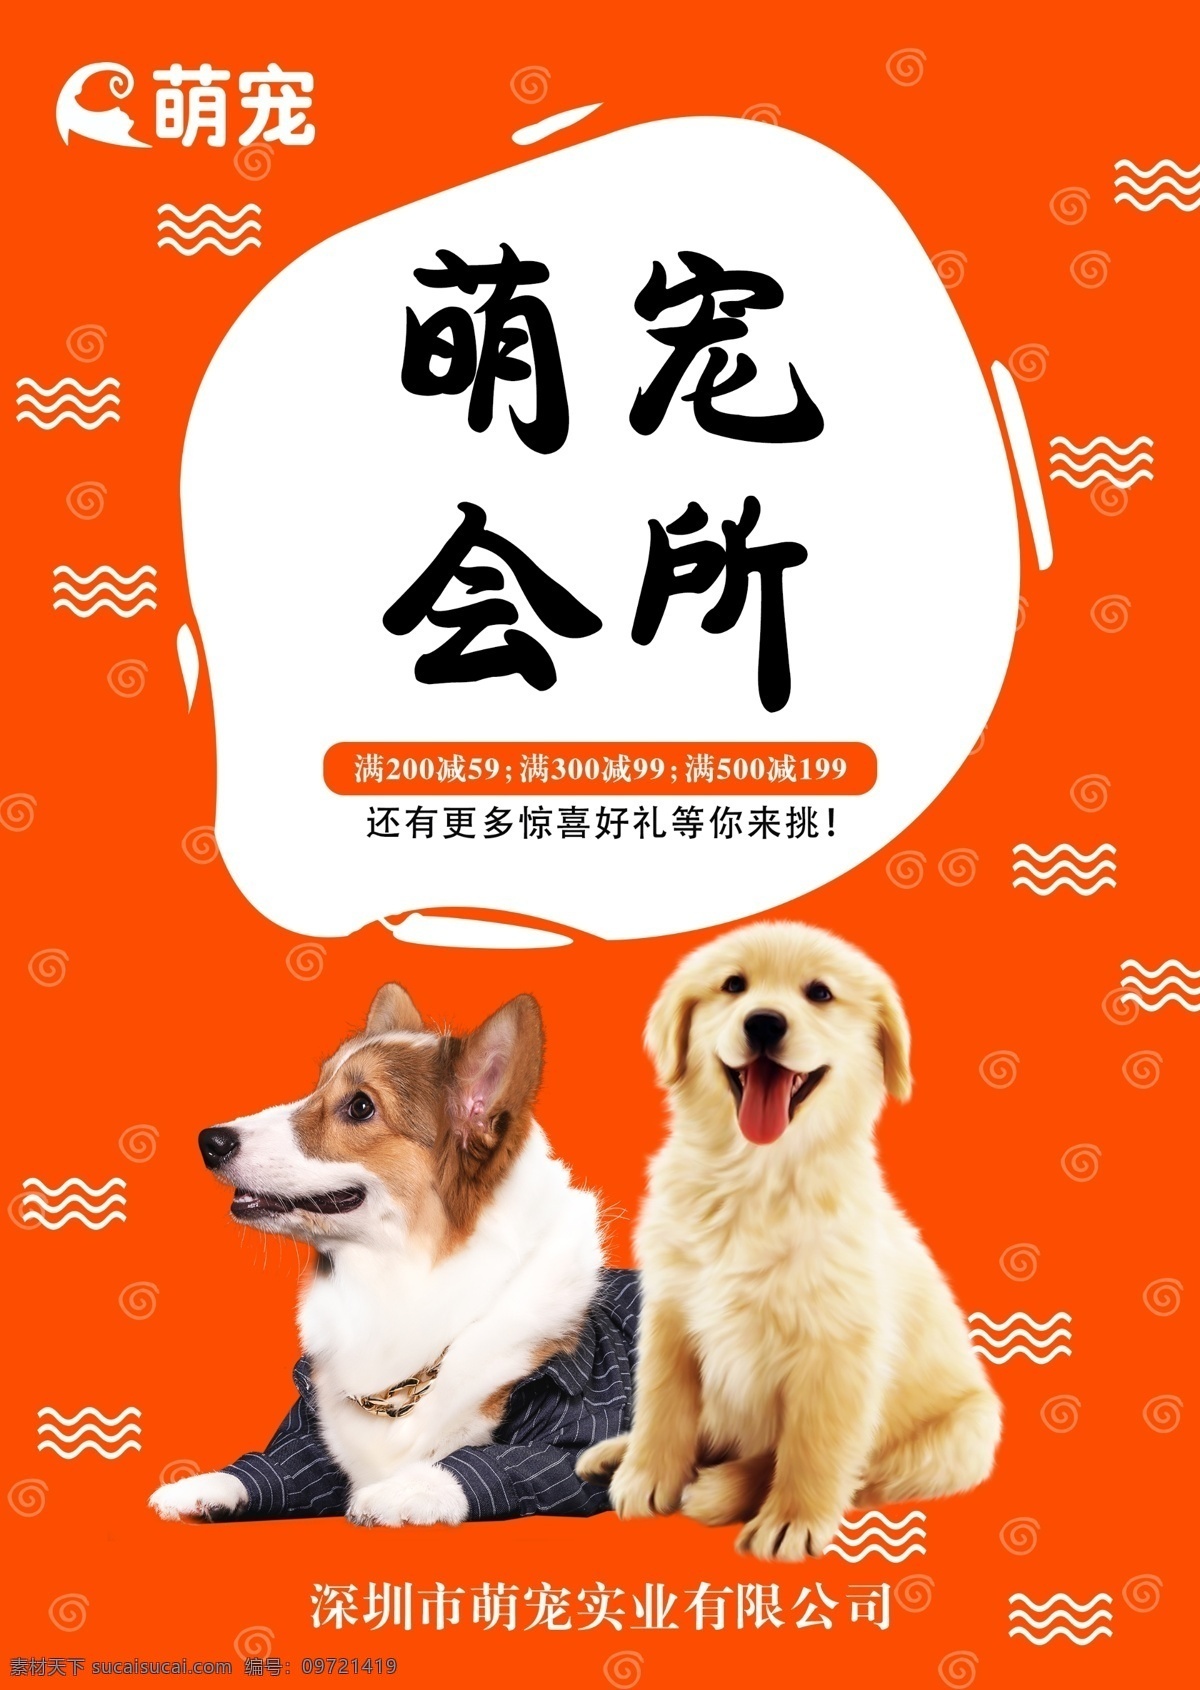 宠物宣传单 宠物 宣传单 橙色 单页 海报